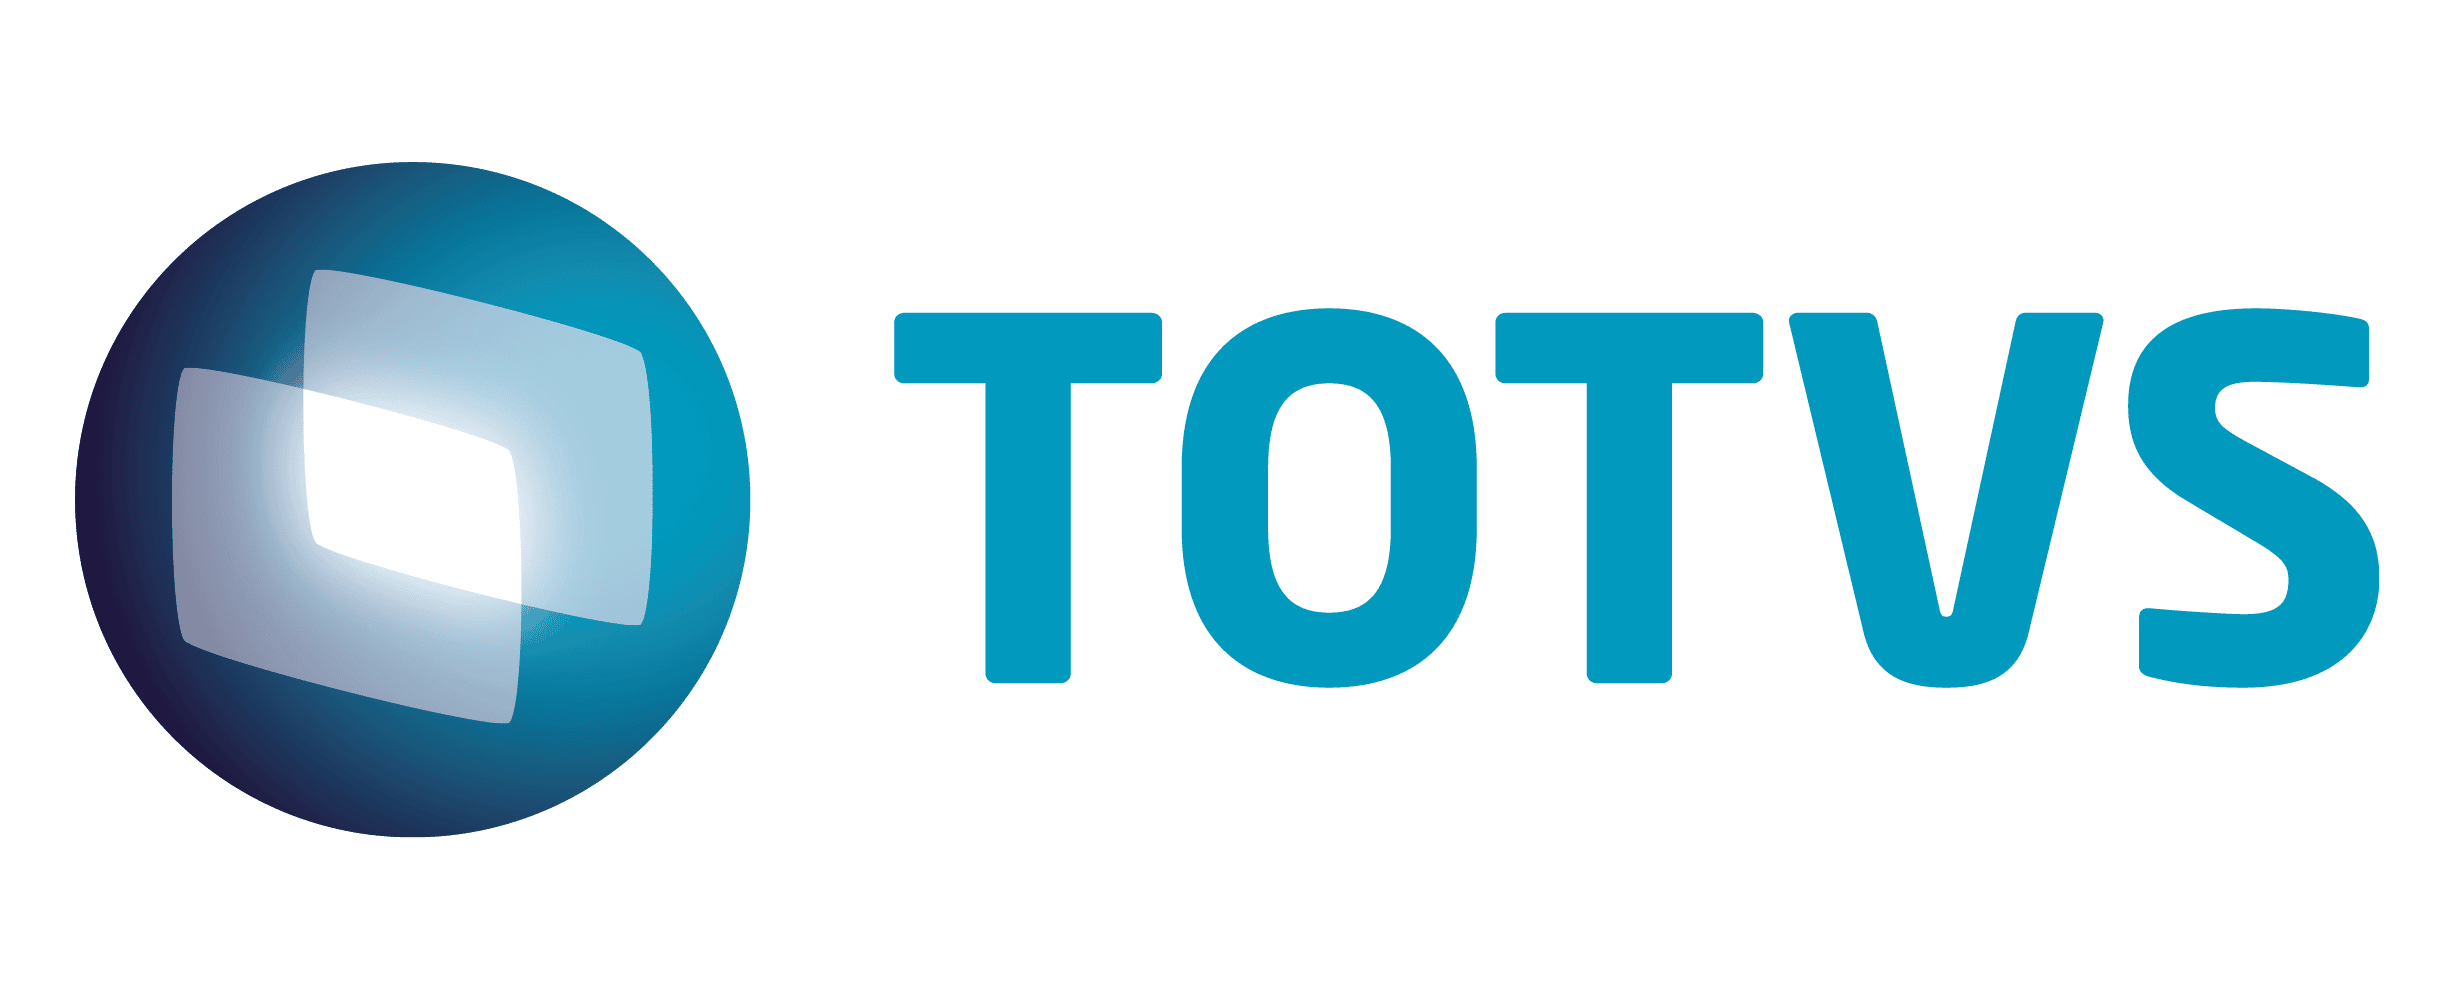 TOTVS Logo